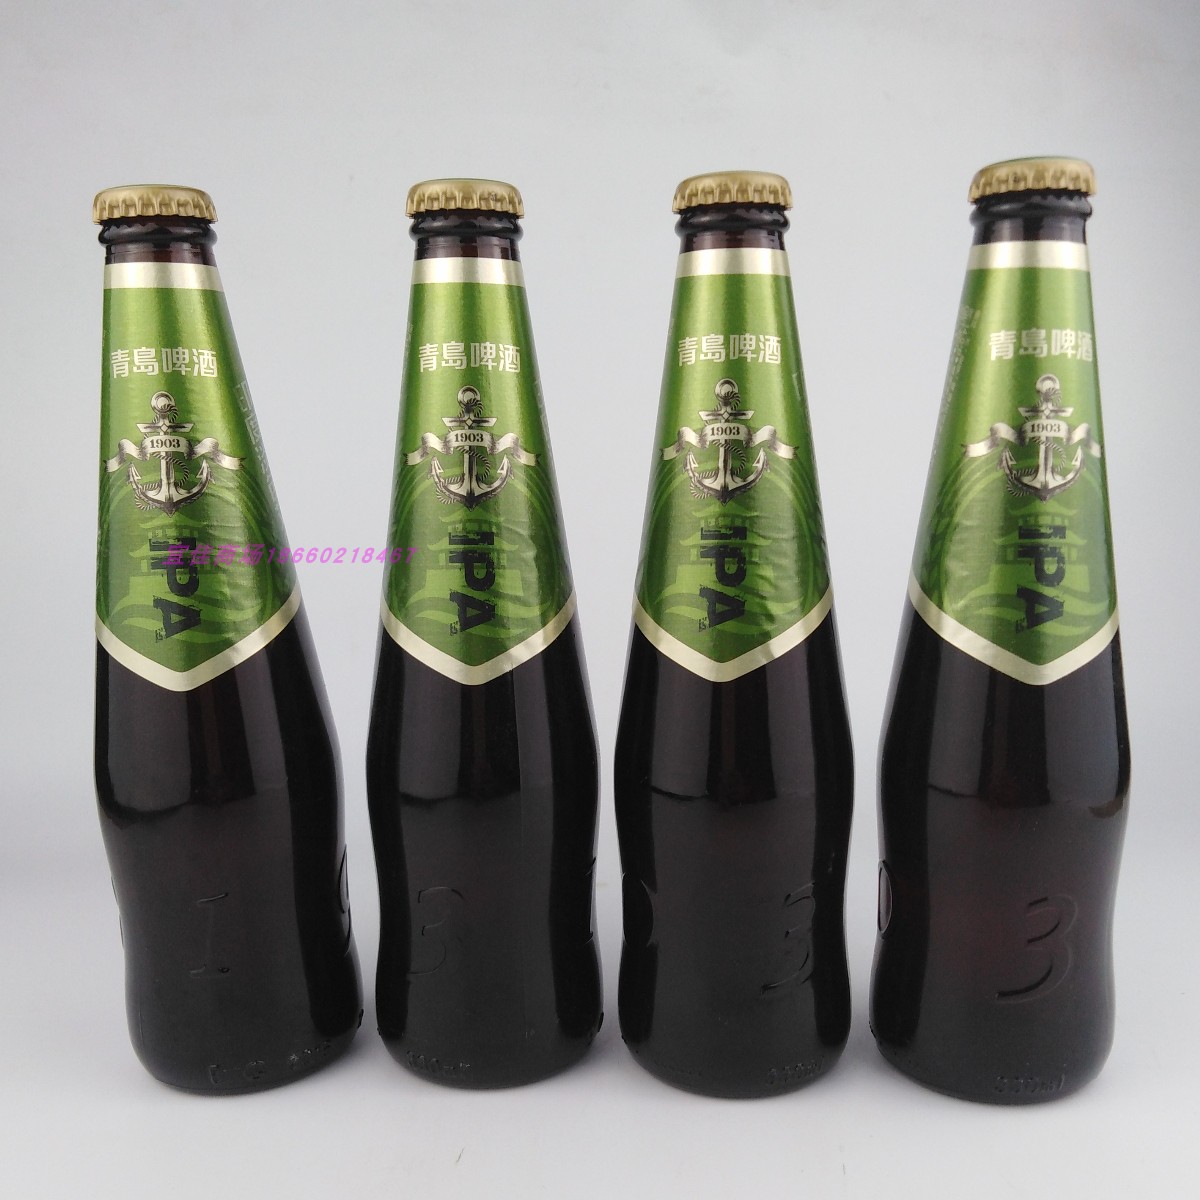 青岛啤酒IPA印度淡色艾尔精酿啤酒330mlX12瓶产地青岛发货 - 图1